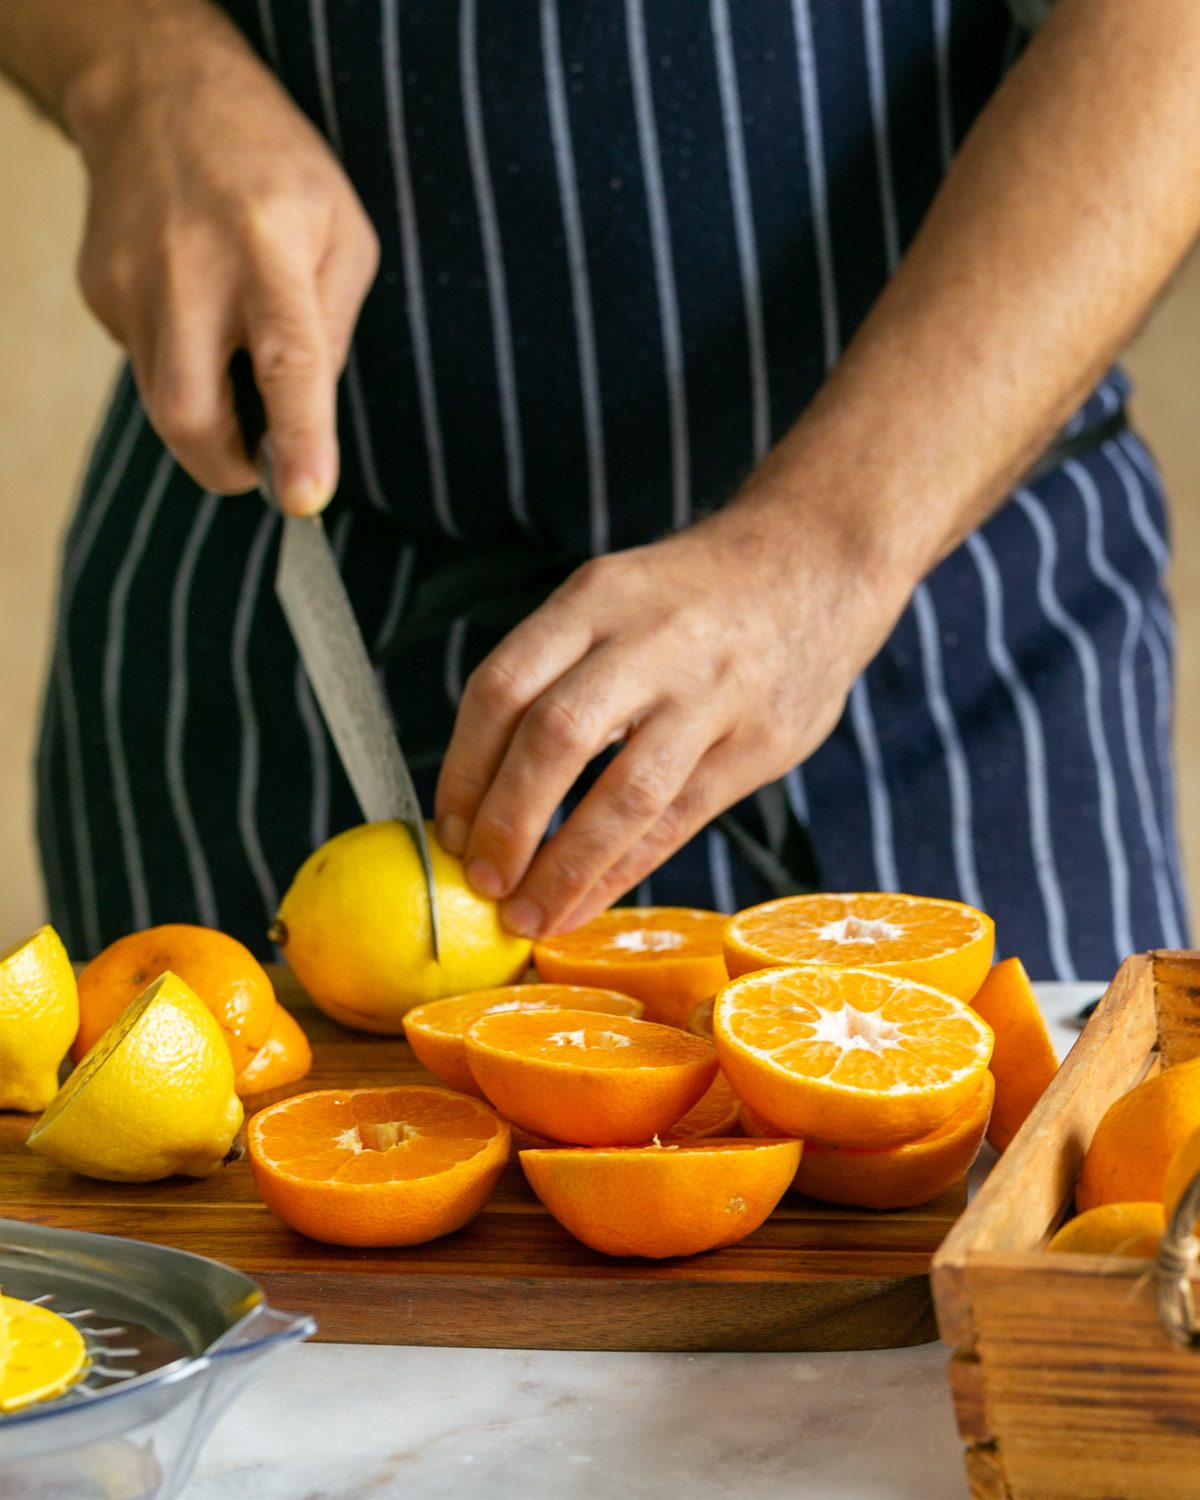 Mandarin and lemons cut in half to juice